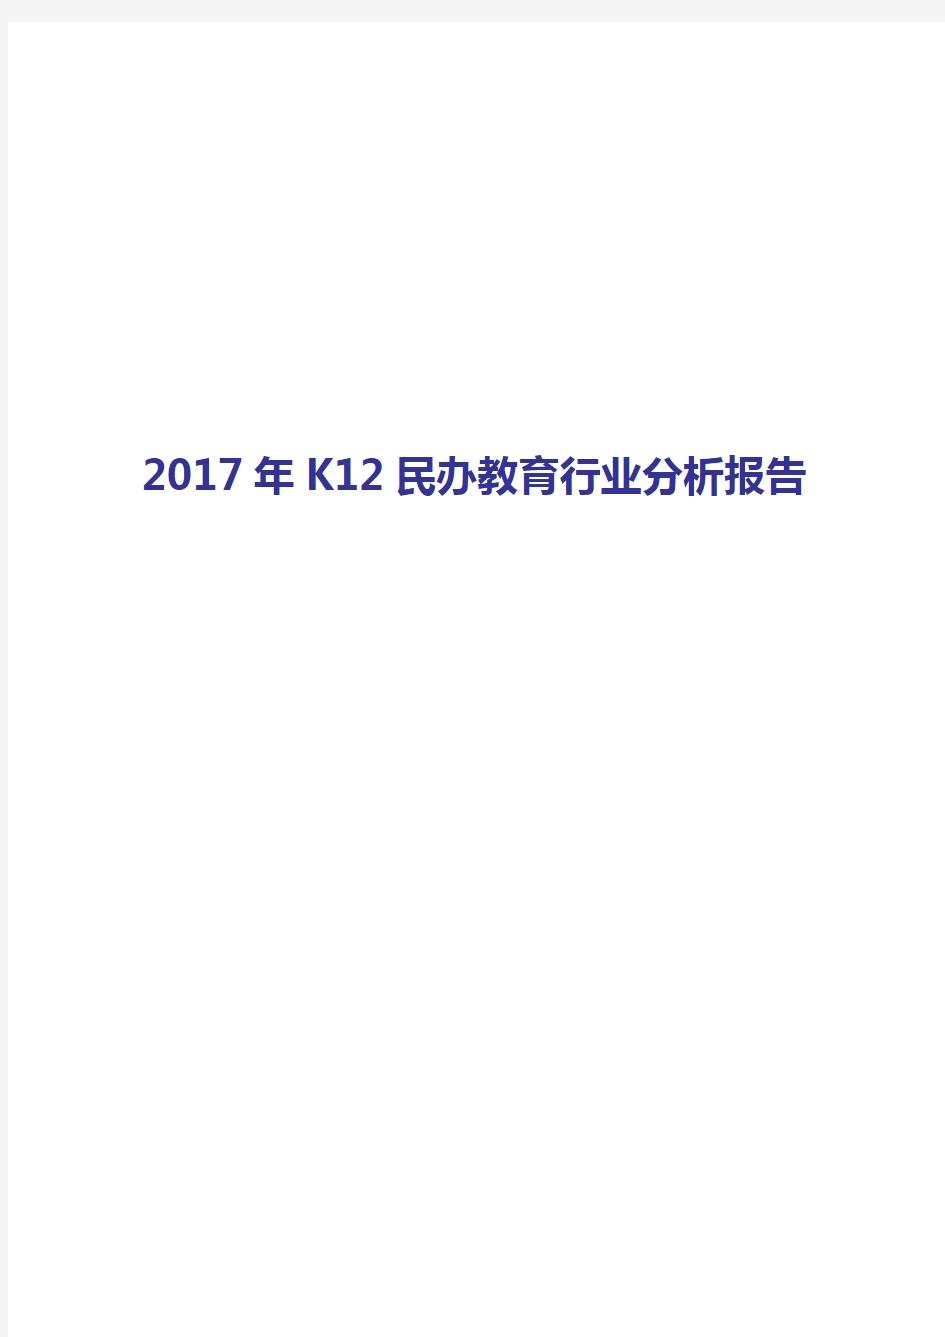 2017-2018年K12民办教育行业分析报告